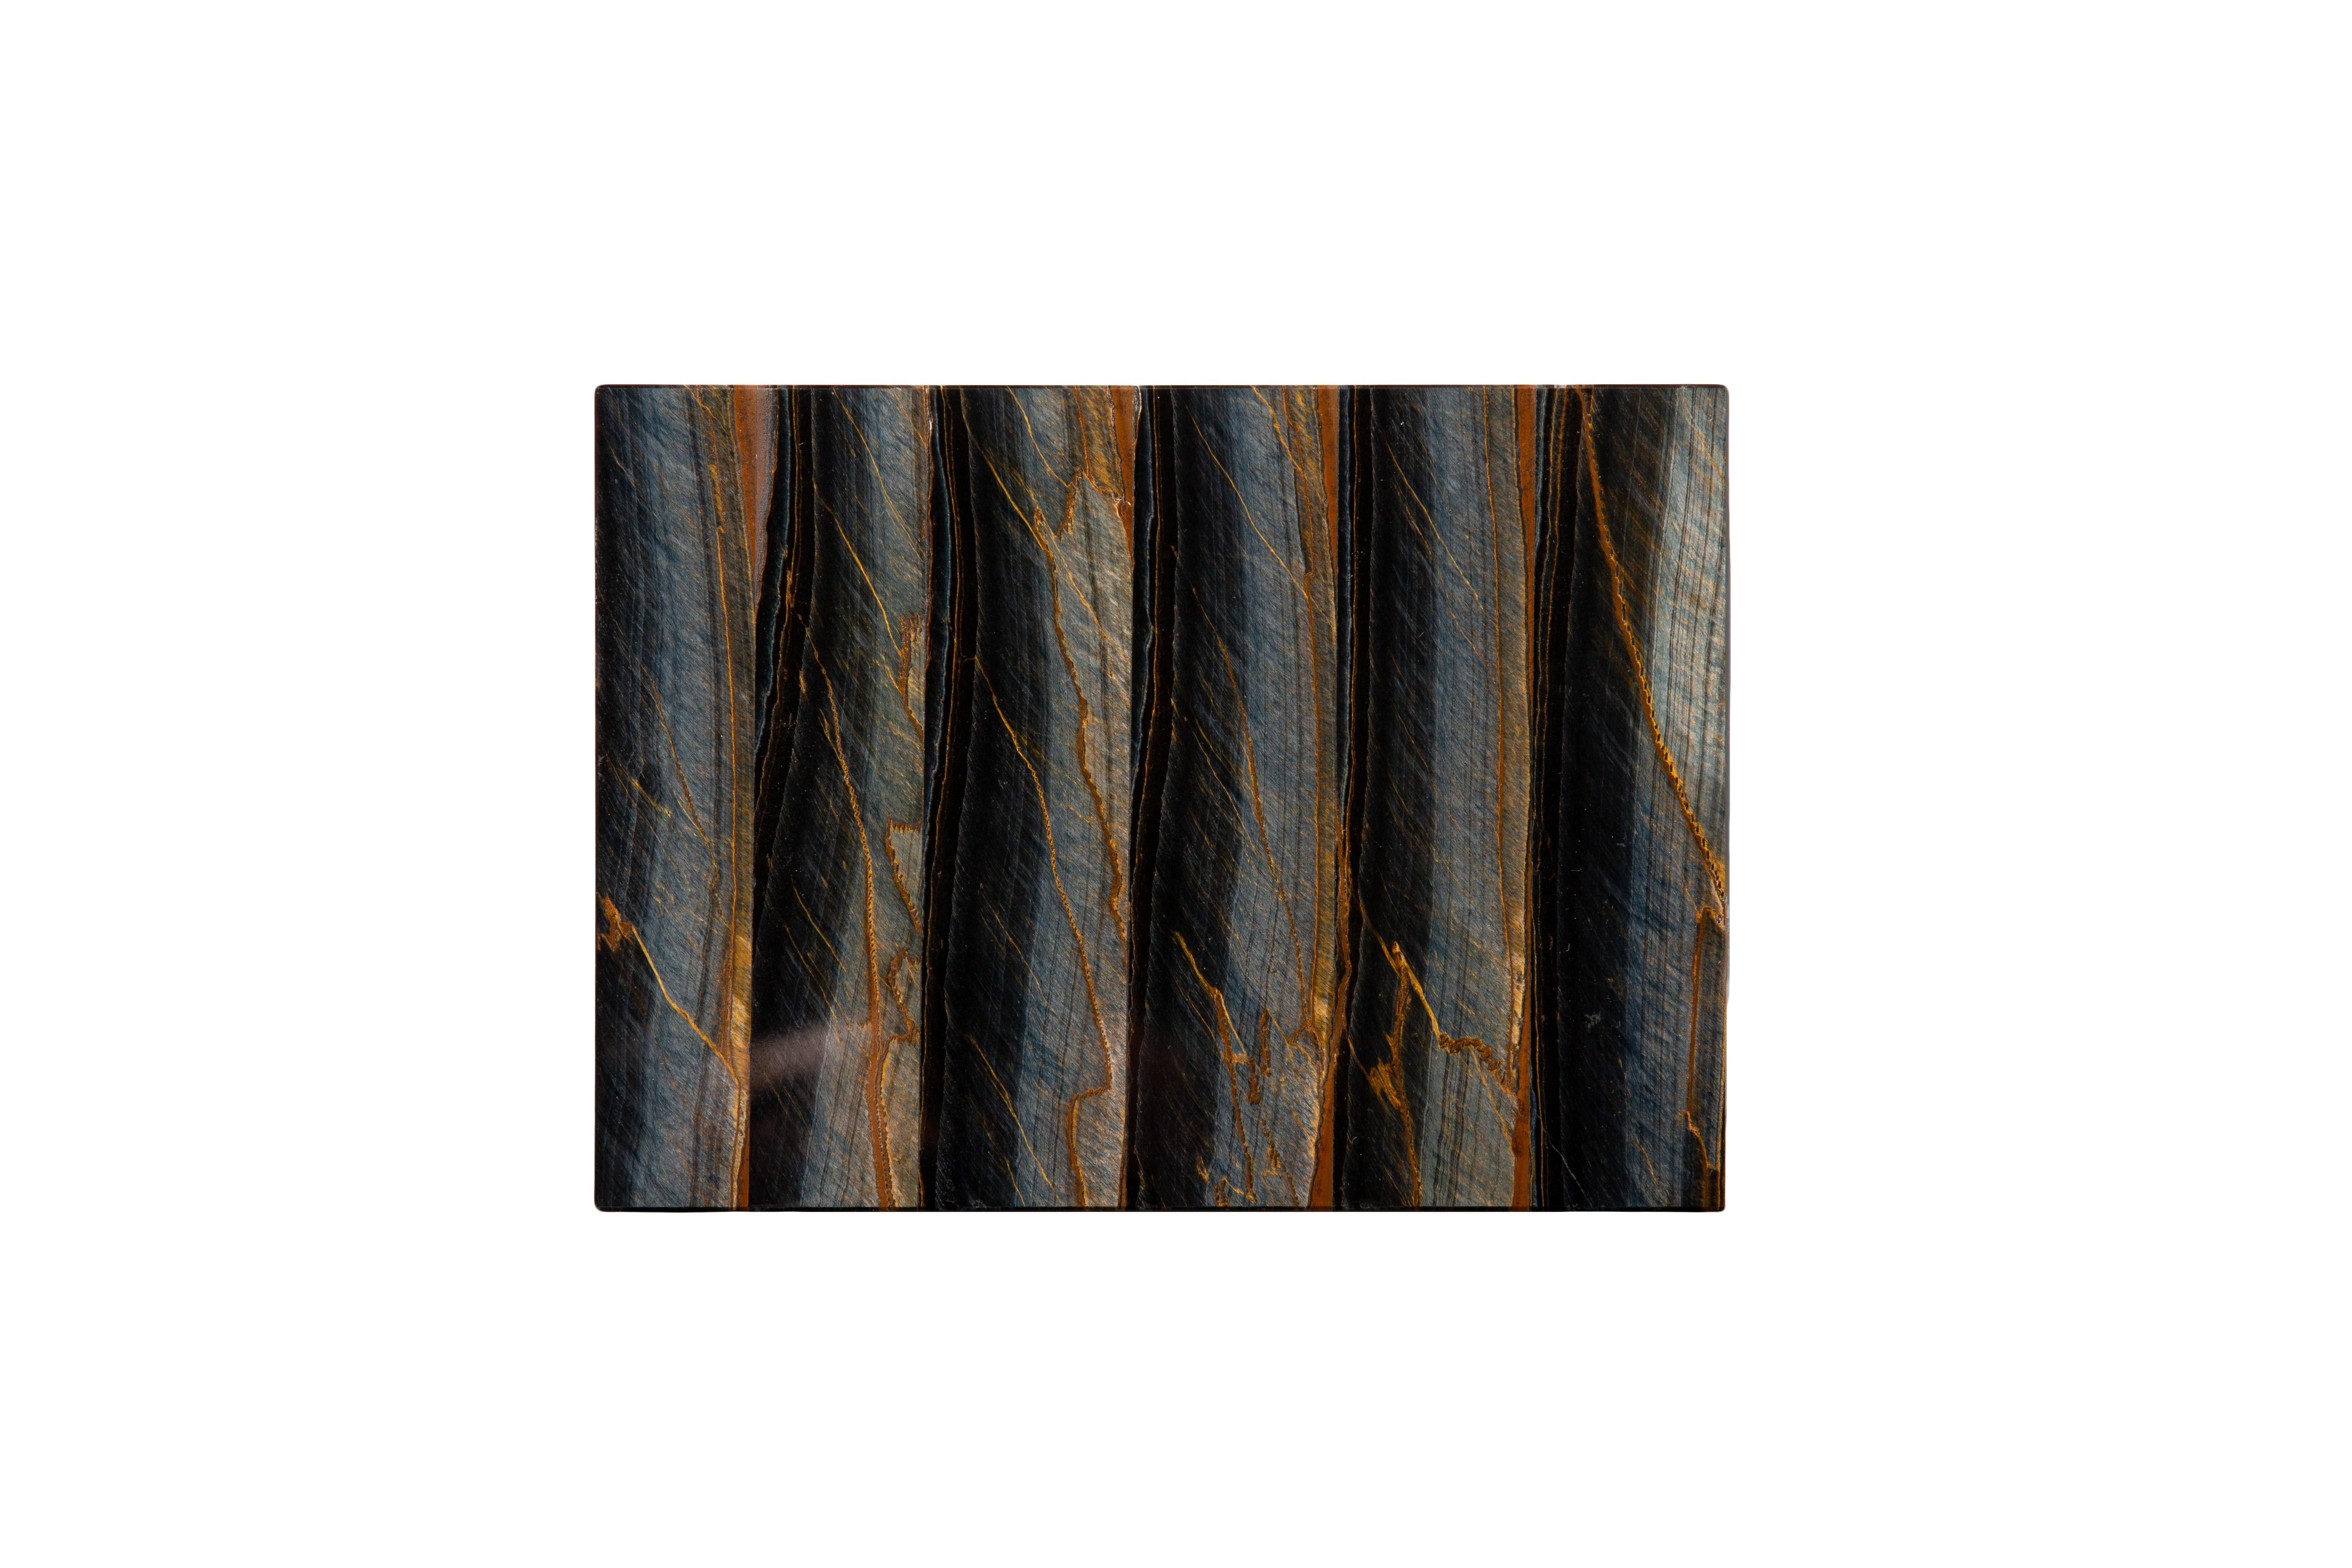 Dose aus Falkenauge-Halbedelstein mit Scharnierdeckel.
Das Falkenauge, auch bekannt als Blaues Tigerauge, ist für seine Chatoyanz berühmt und erinnert an das Auge eines Falken oder Habichts. Das Tigerauge wird eigentlich aus dem Falkenauge